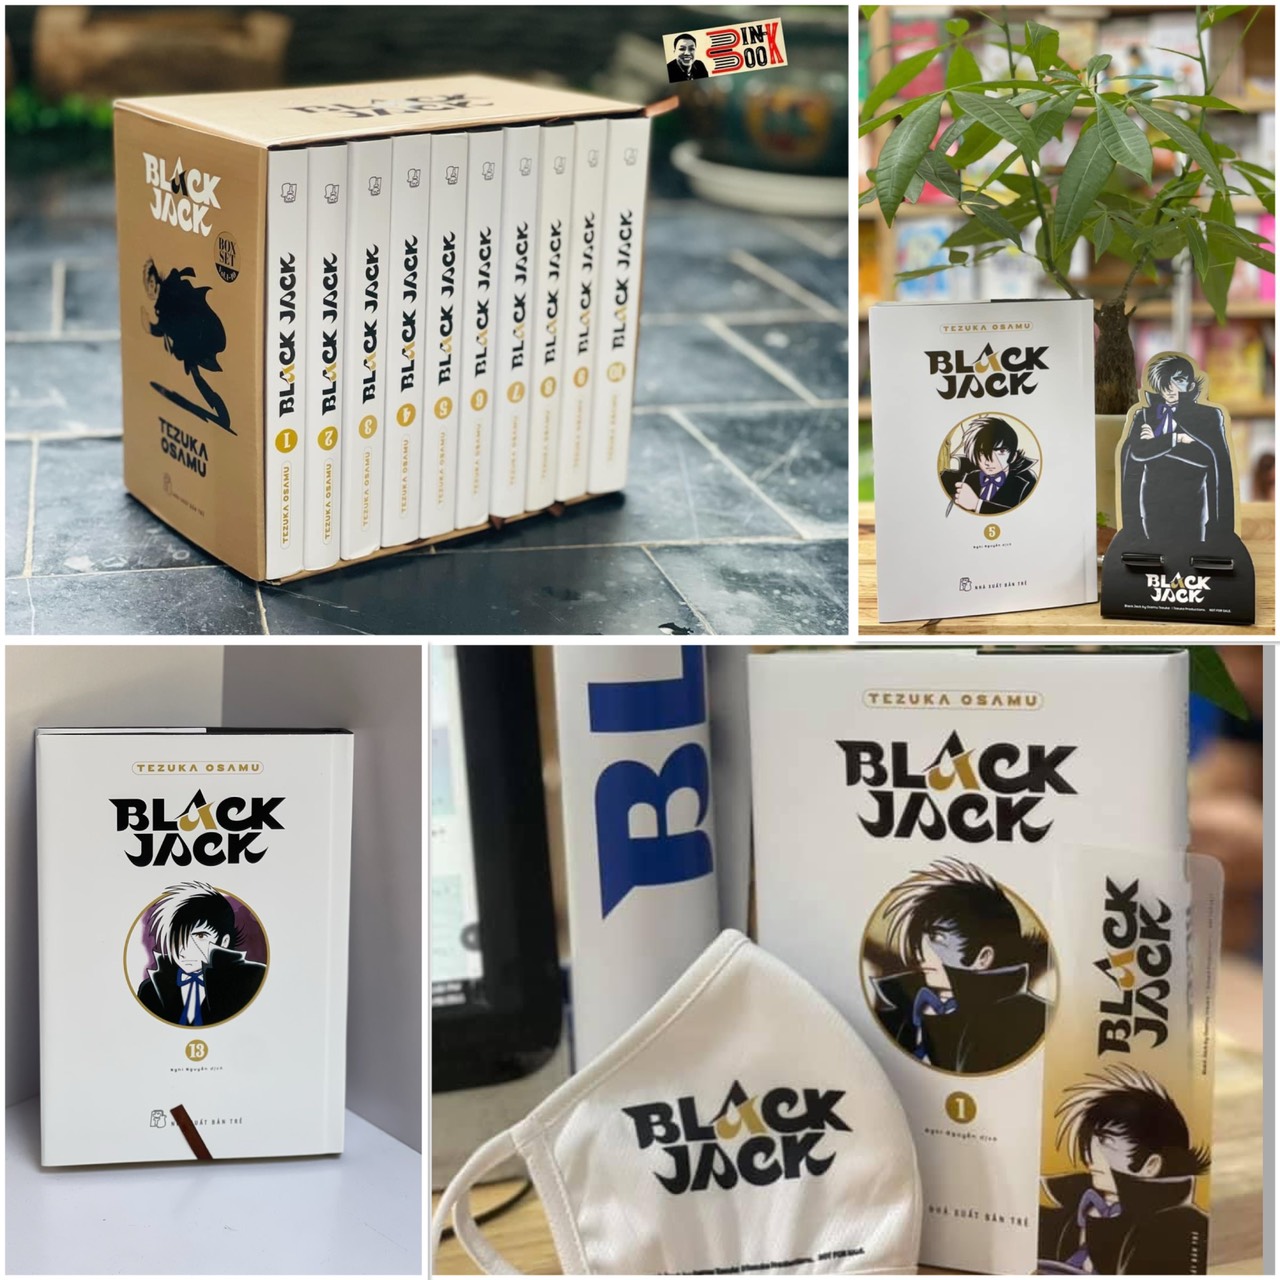 [Combo 13 tập bìa cứng + boxset ôm 10 tập] BLACK JACK từ tập 1 tới tập 13 - Tezuka Osamu - NXB Trẻ